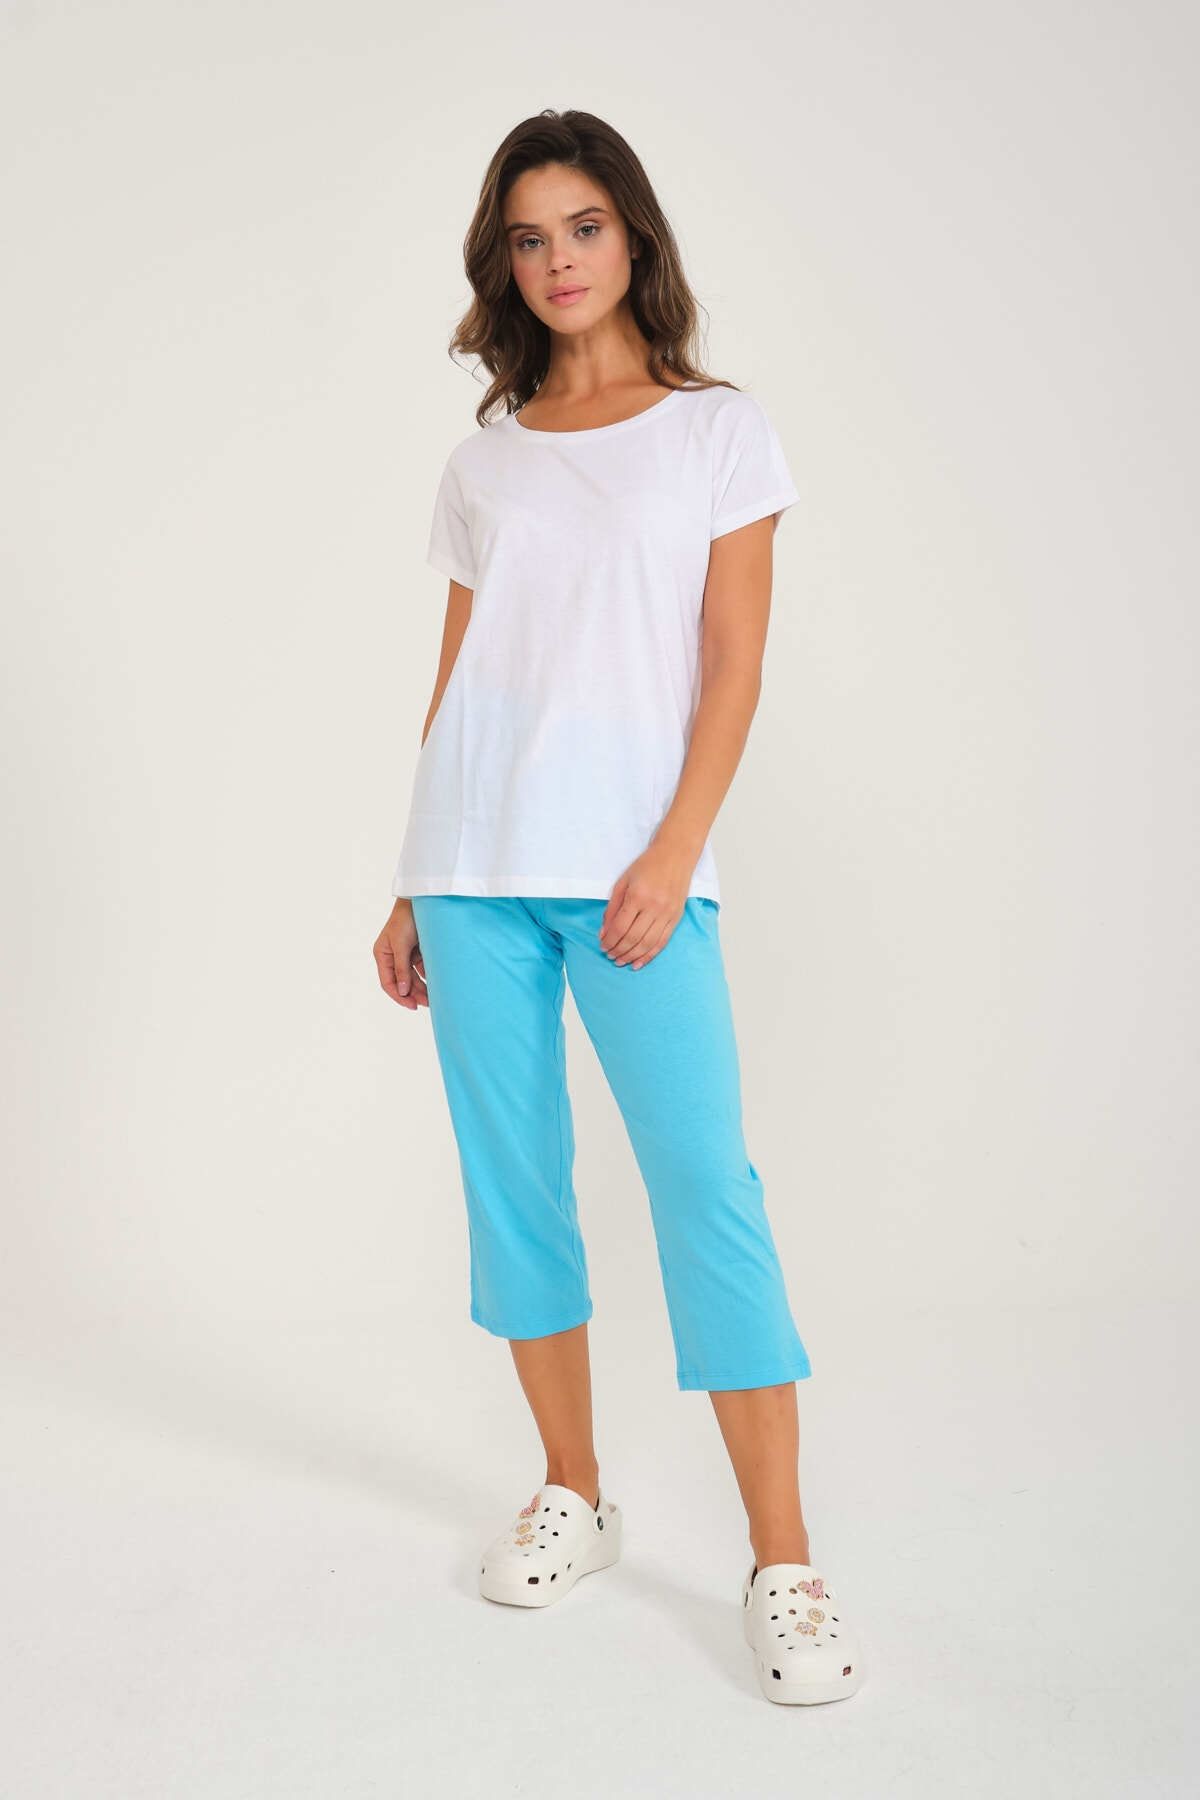 Genel Markalar %100 Pamuk Kadın Pijama Takımı Tshirt-pantolon Homewear